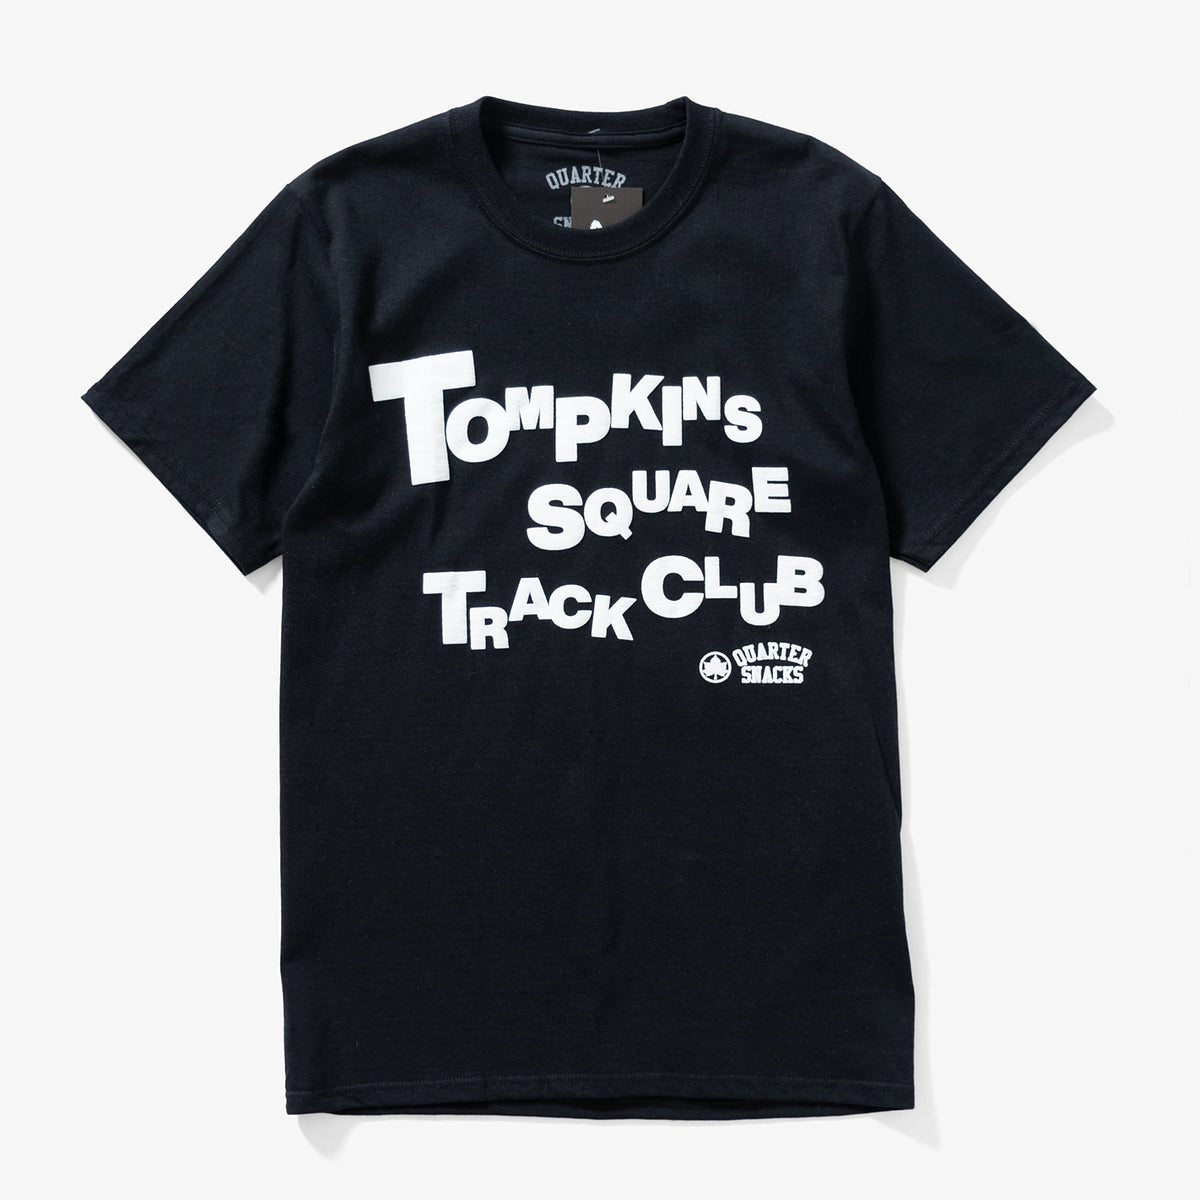 Track Club Tee (Black)